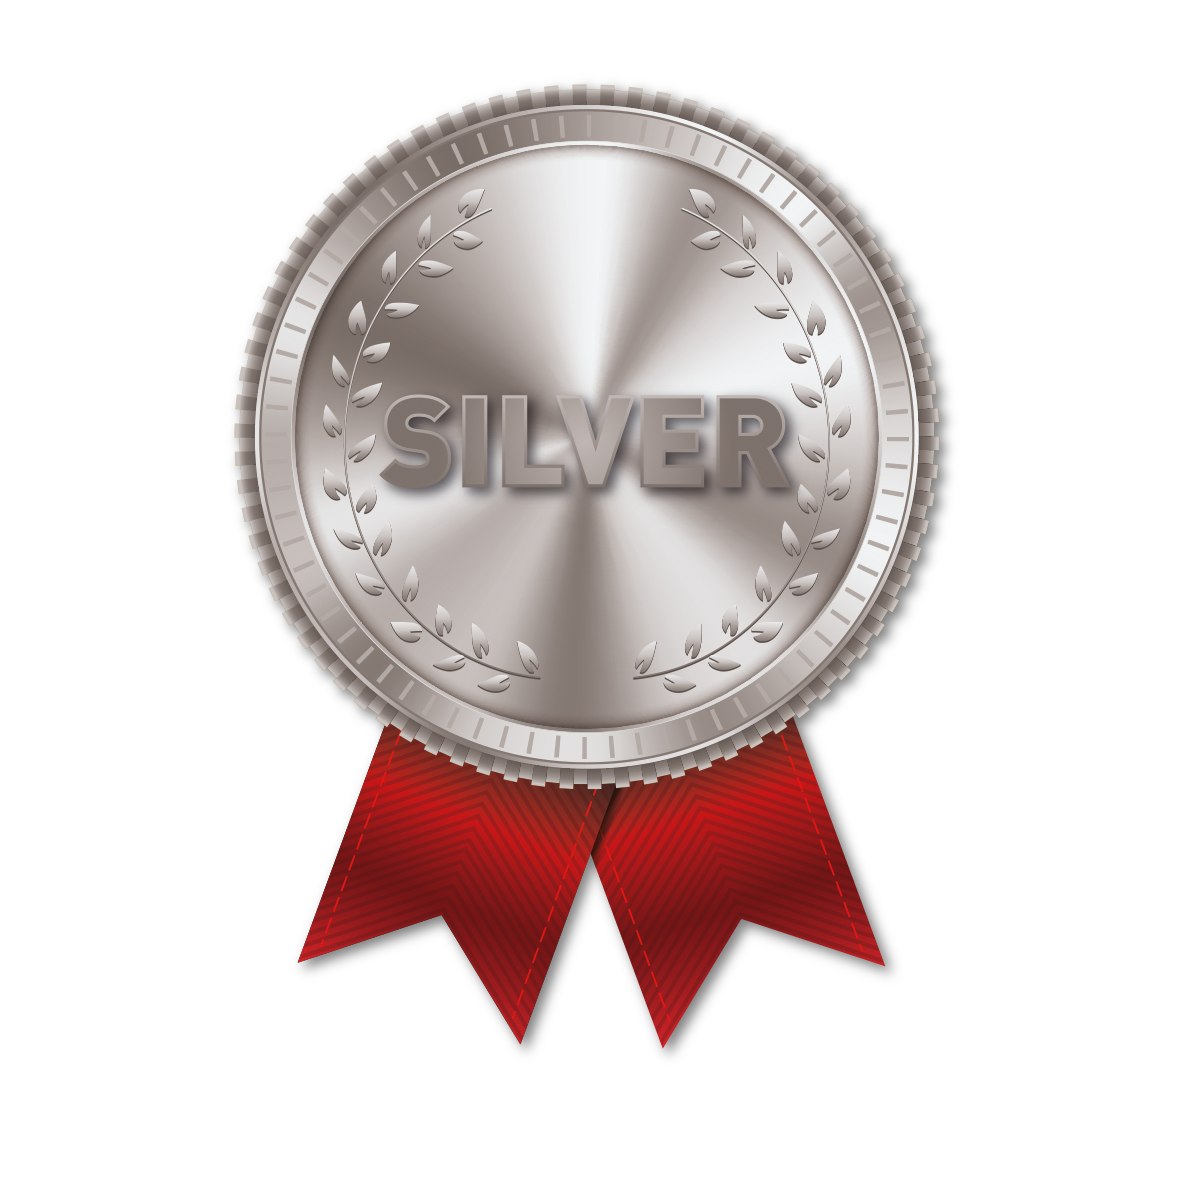 TD Silver Award